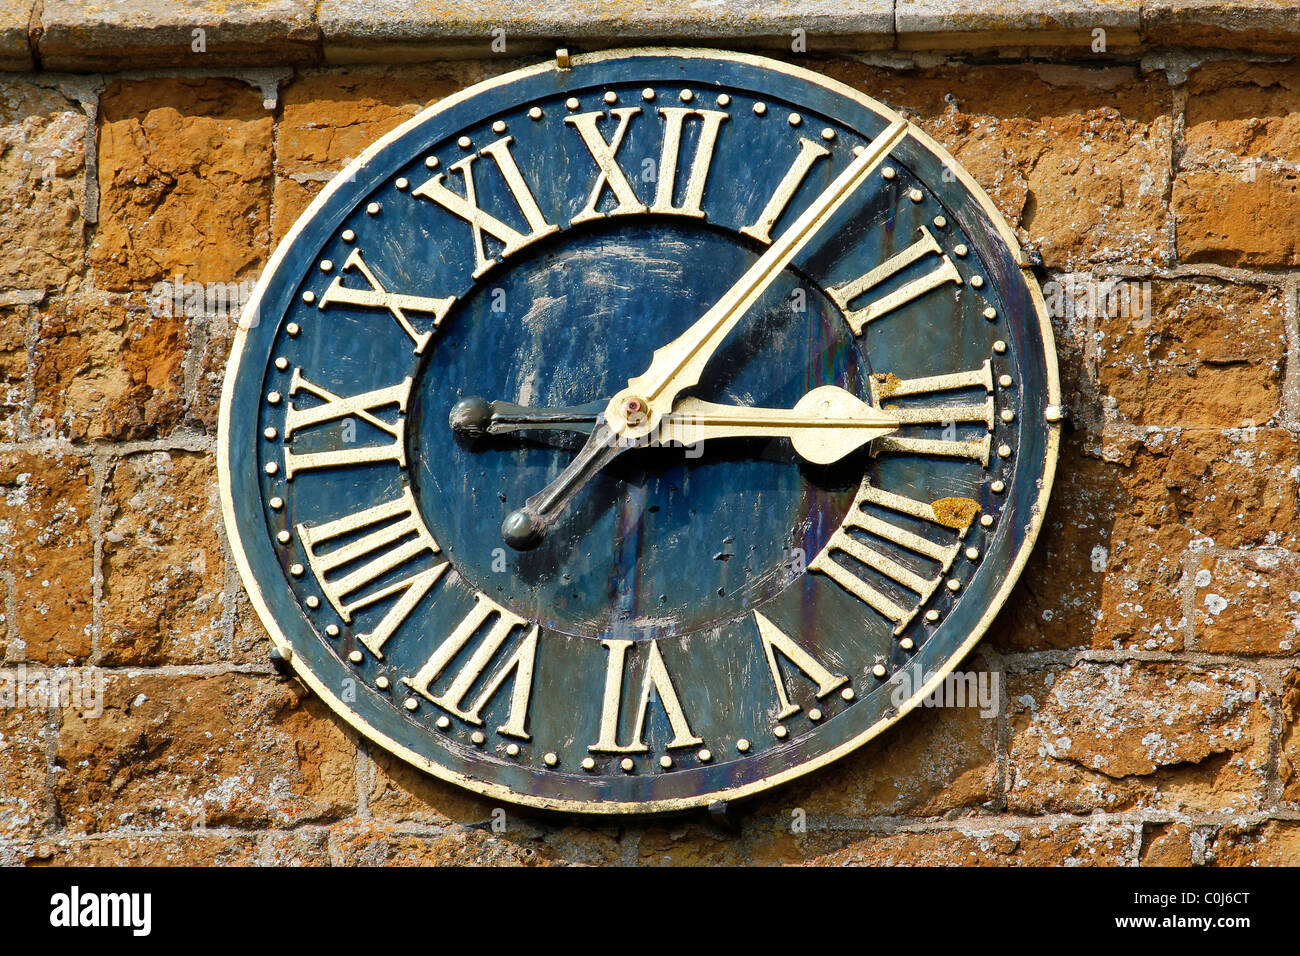 Horloge d'église ornée avec des chiffres romains sur la tour rustique moelleuse Ironstone de St. Peter's Church, Knossington, Leicestershire, Angleterre, Royaume-Uni Banque D'Images